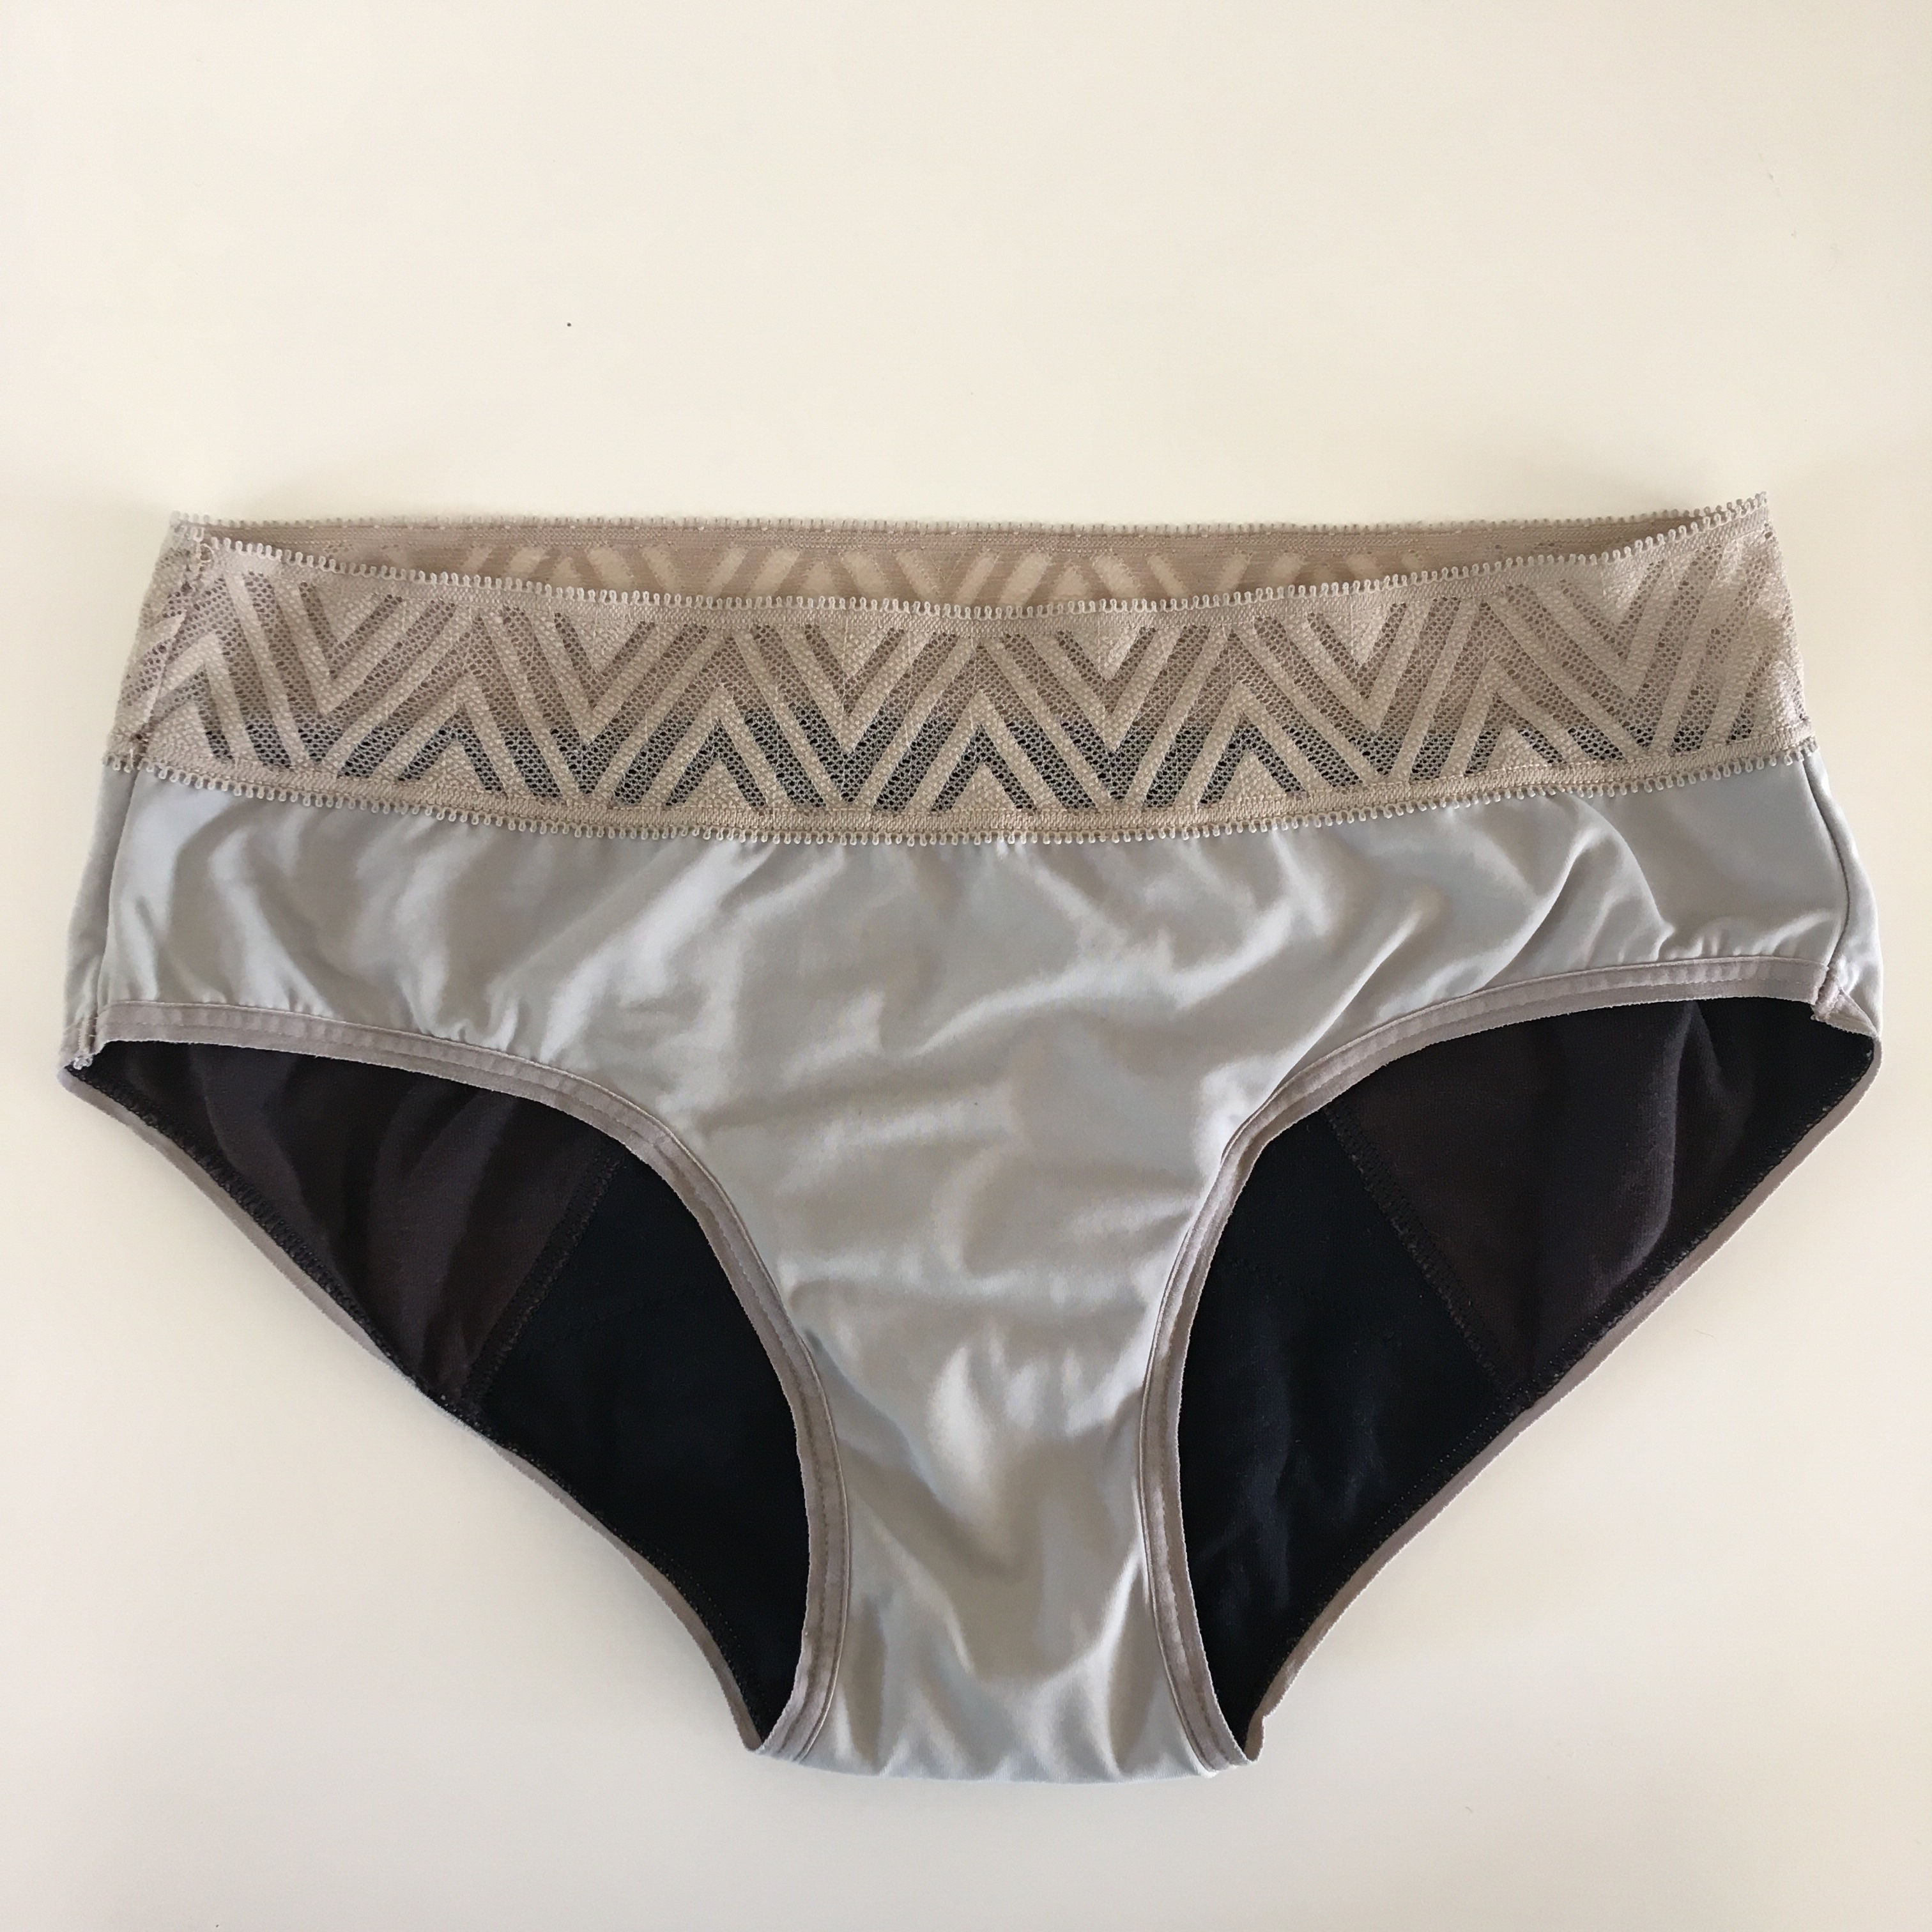 THINX Period Underwear Reviews